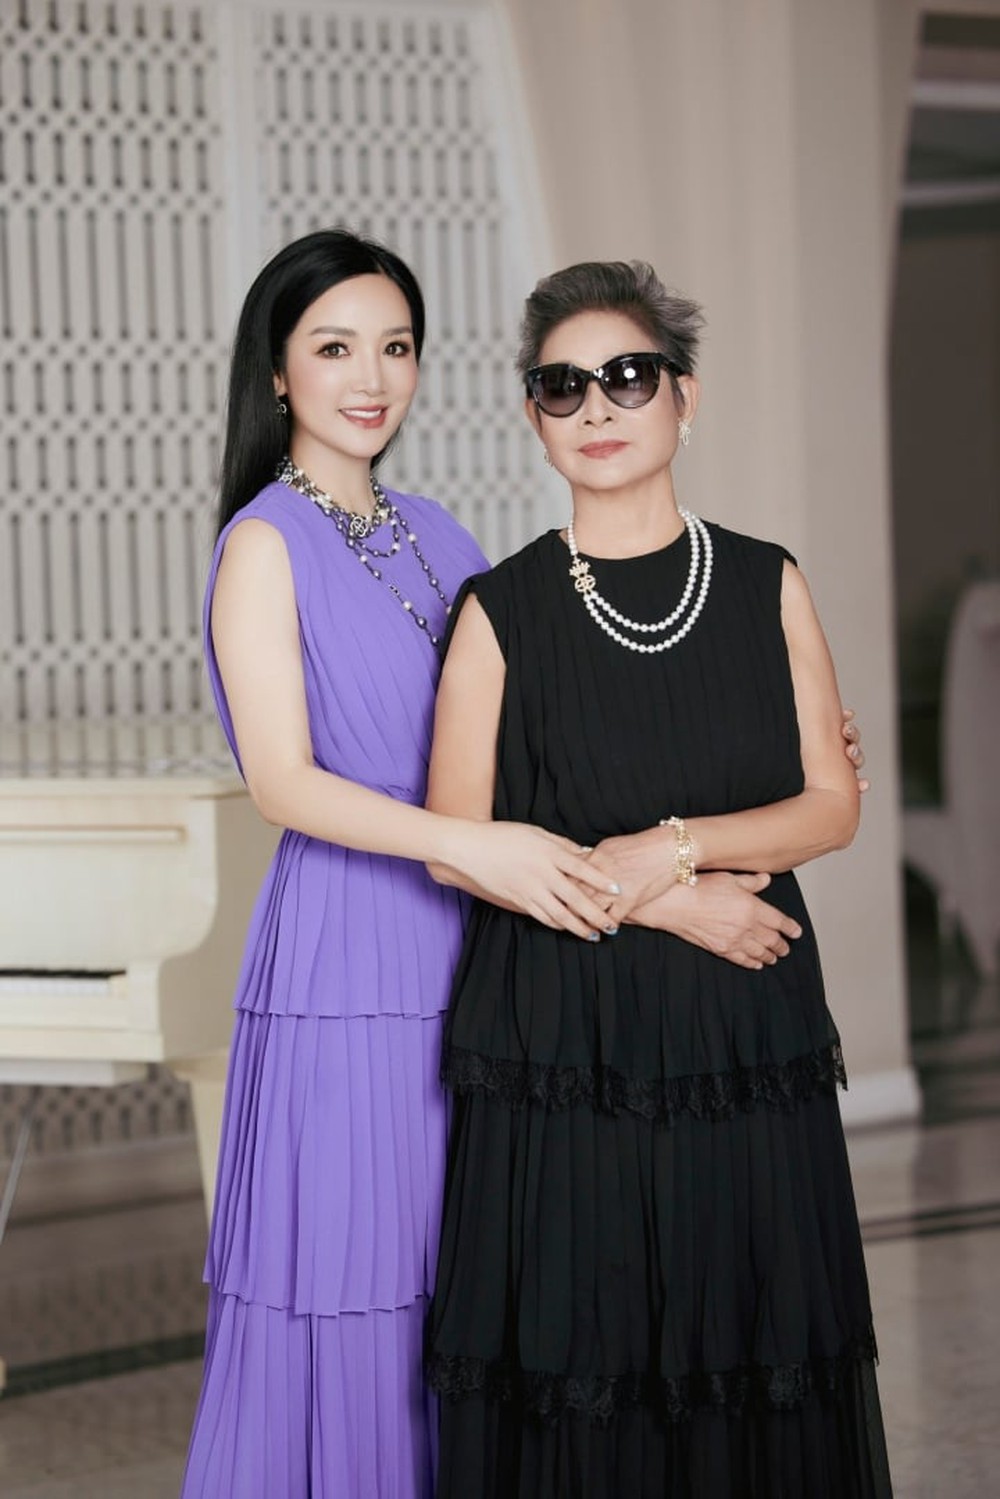 Hoa hậu Đền Hùng khoe mẹ ruột U80 vẫn trẻ trung, sành điệu, từng là hoa khôi Nhạc viện - Ảnh 5.